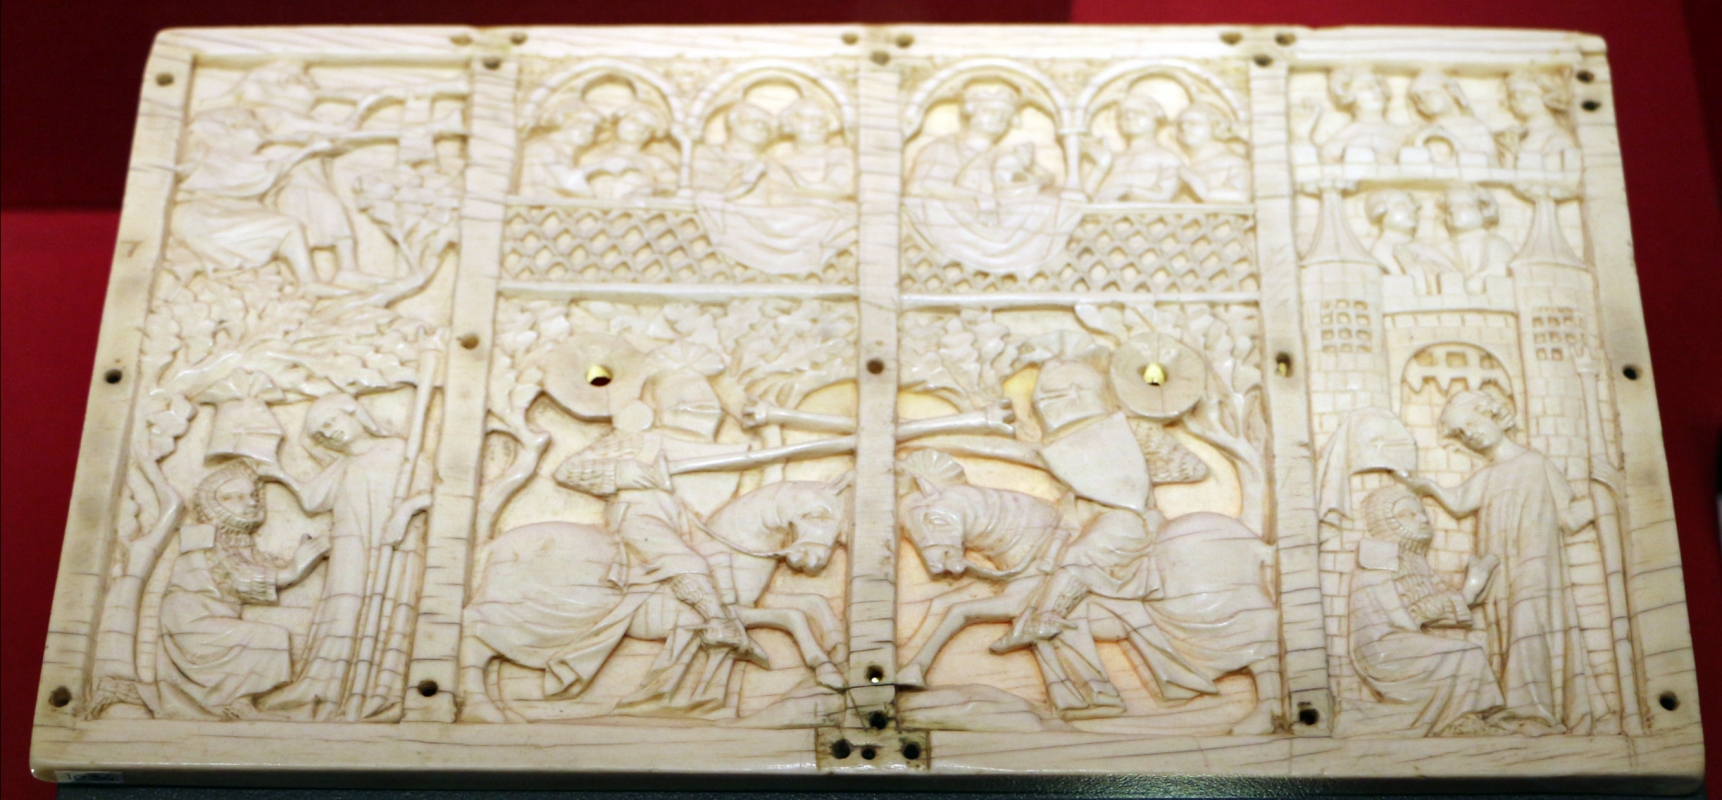 Parigi, coperchio di cofanetto con scena di torneo, avorio, 1300-30 ca - Sailko